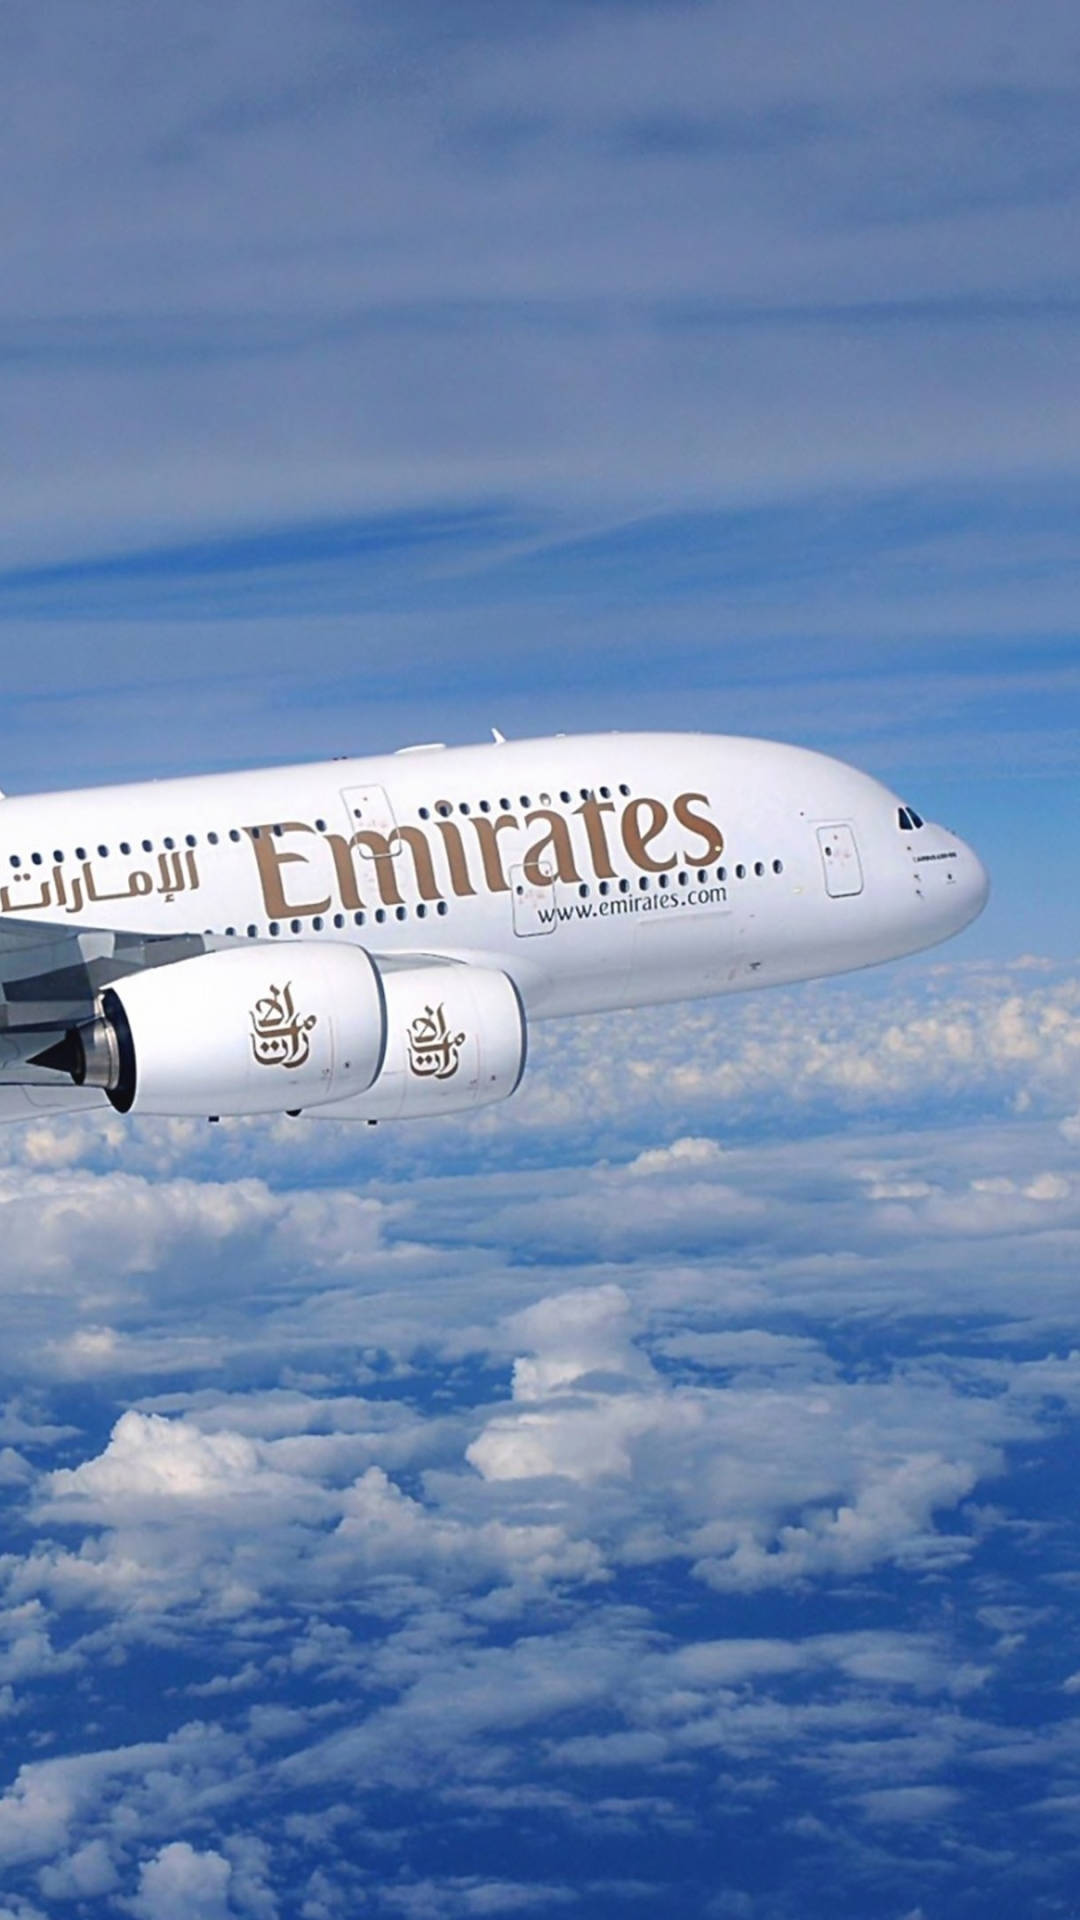 Emiratesa380 Flygande I Blå Himmel. Wallpaper